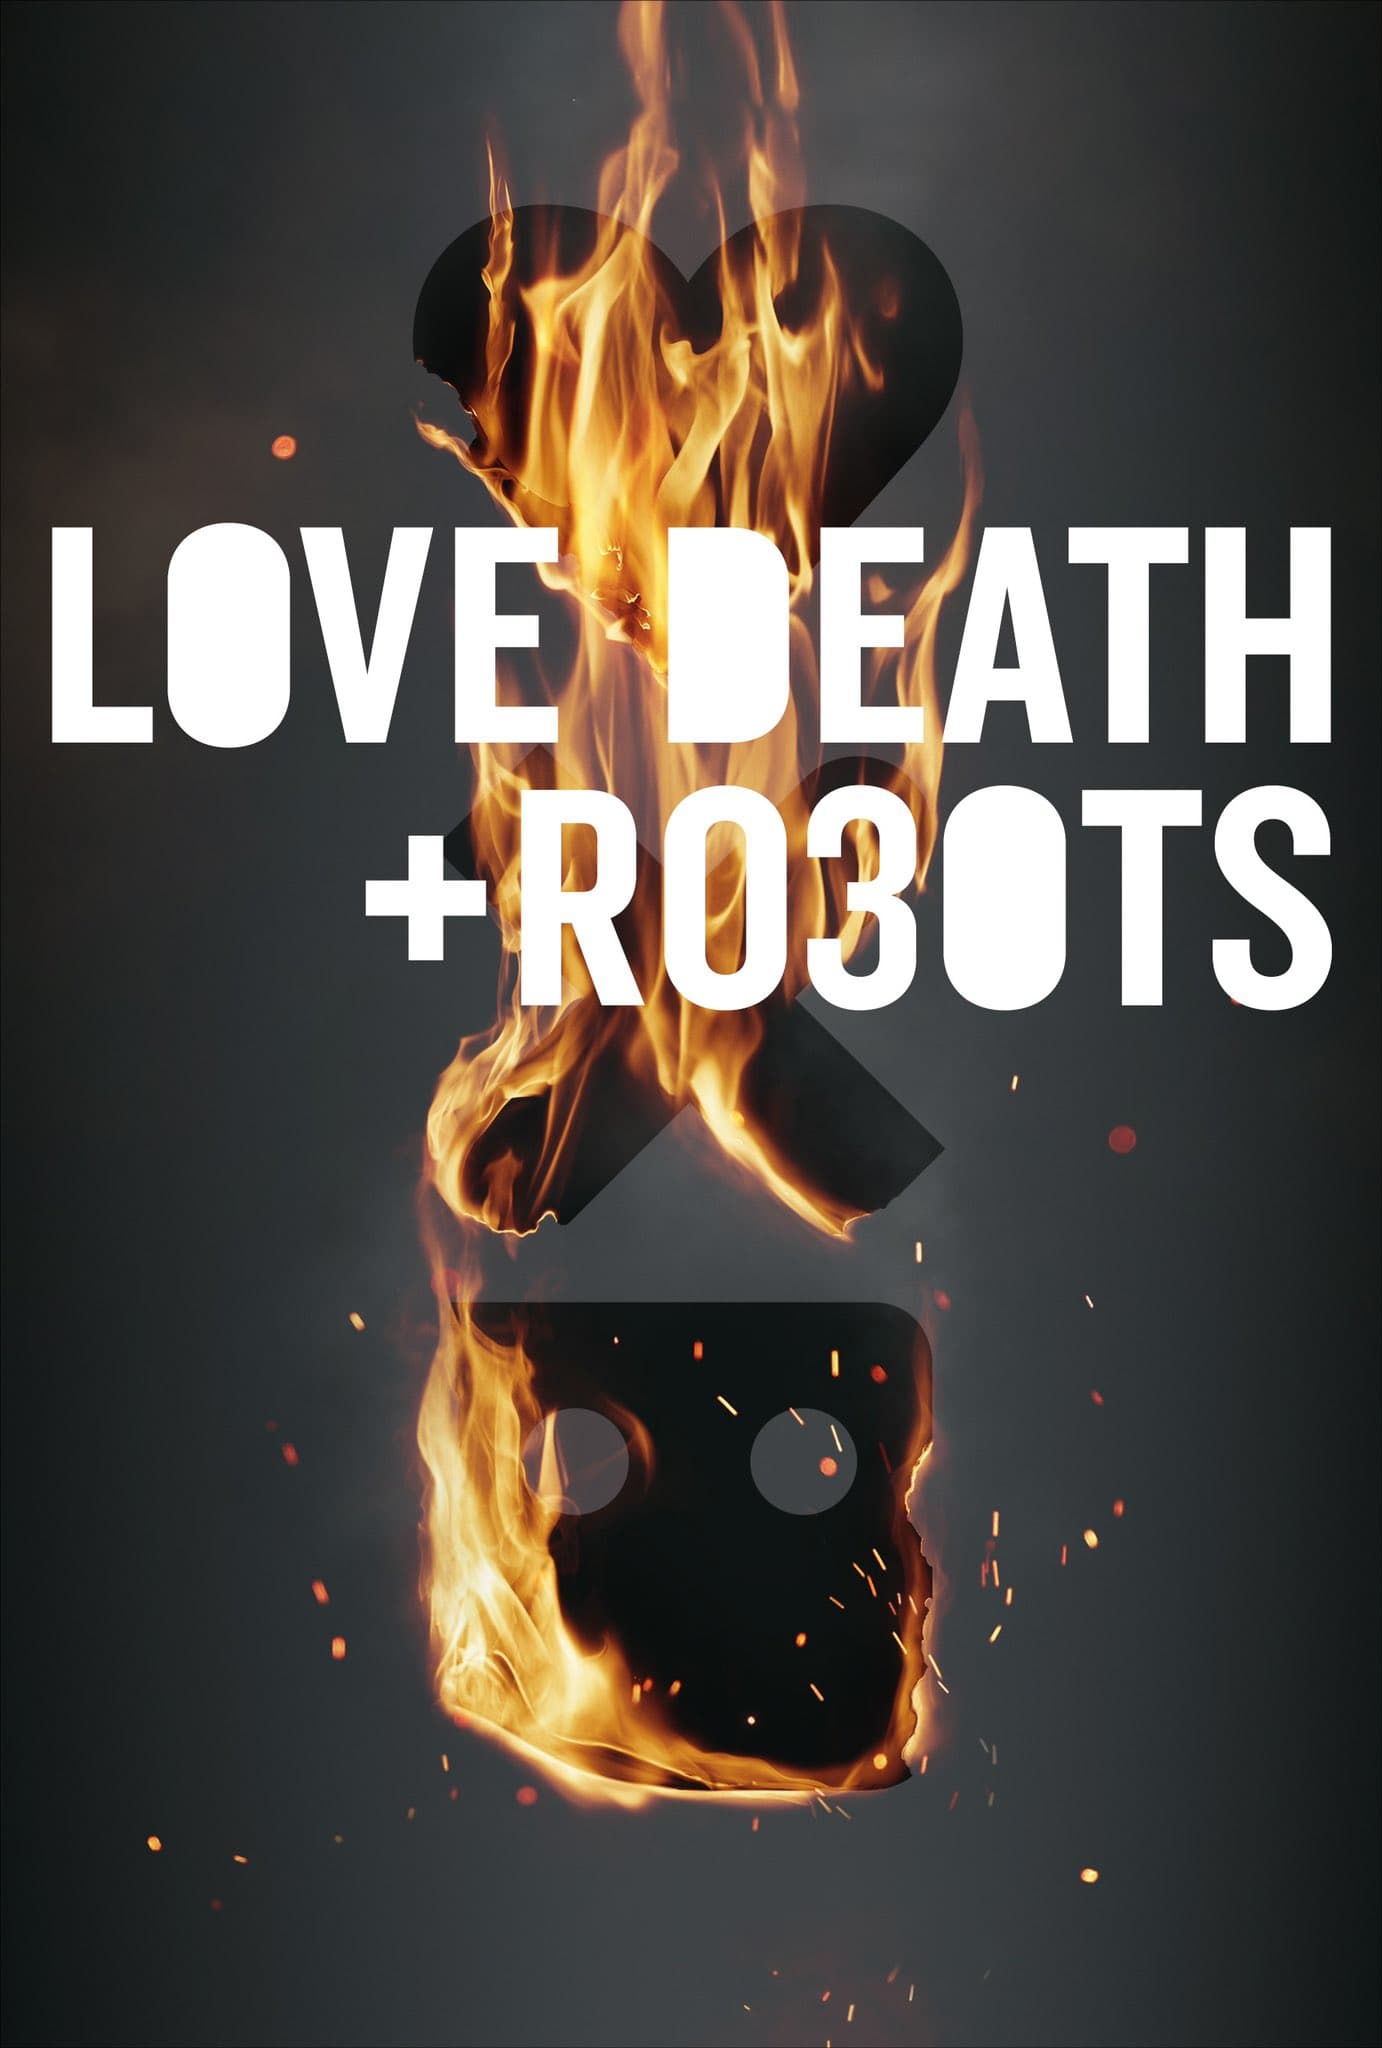 دانلود صوت دوبله سریال Love, Death & Robots